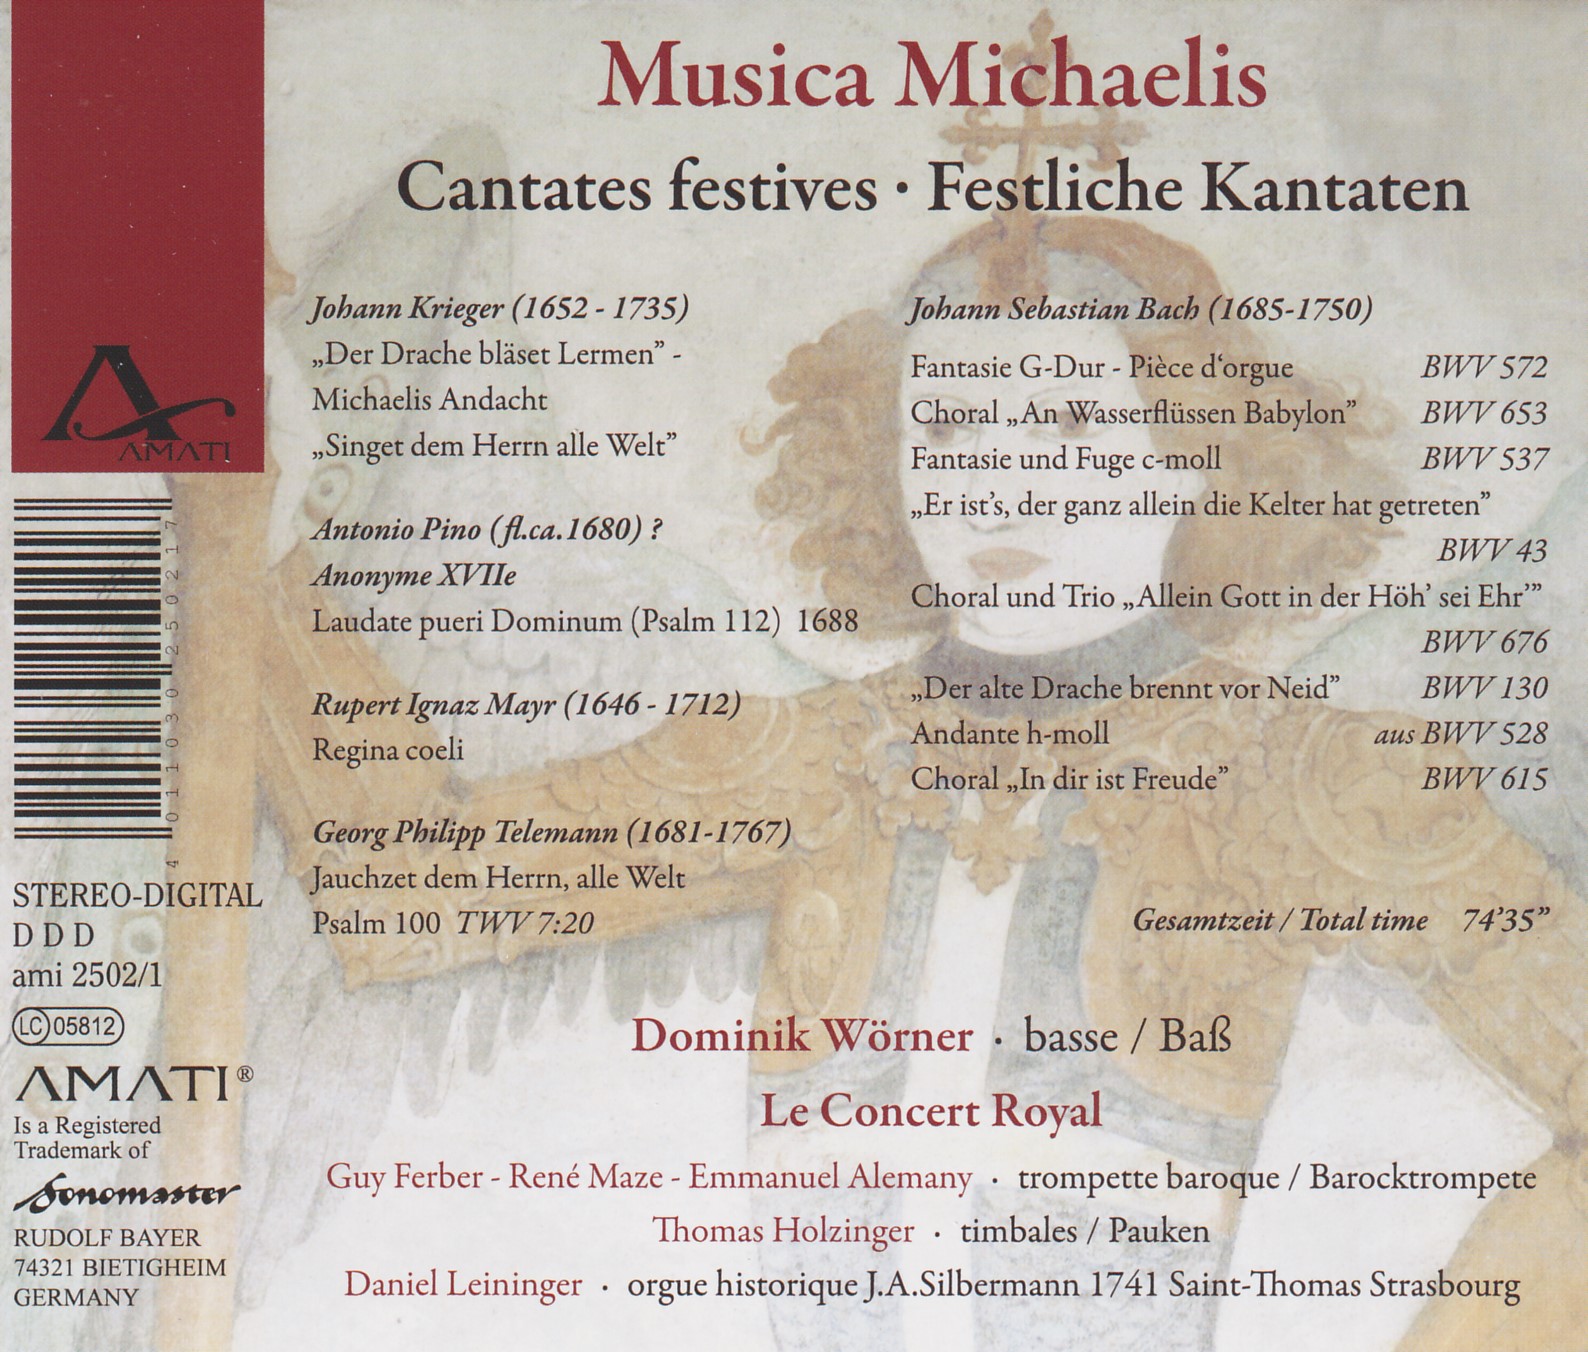 Musica Michaelis: Cantates festives - Festliche Kantaten